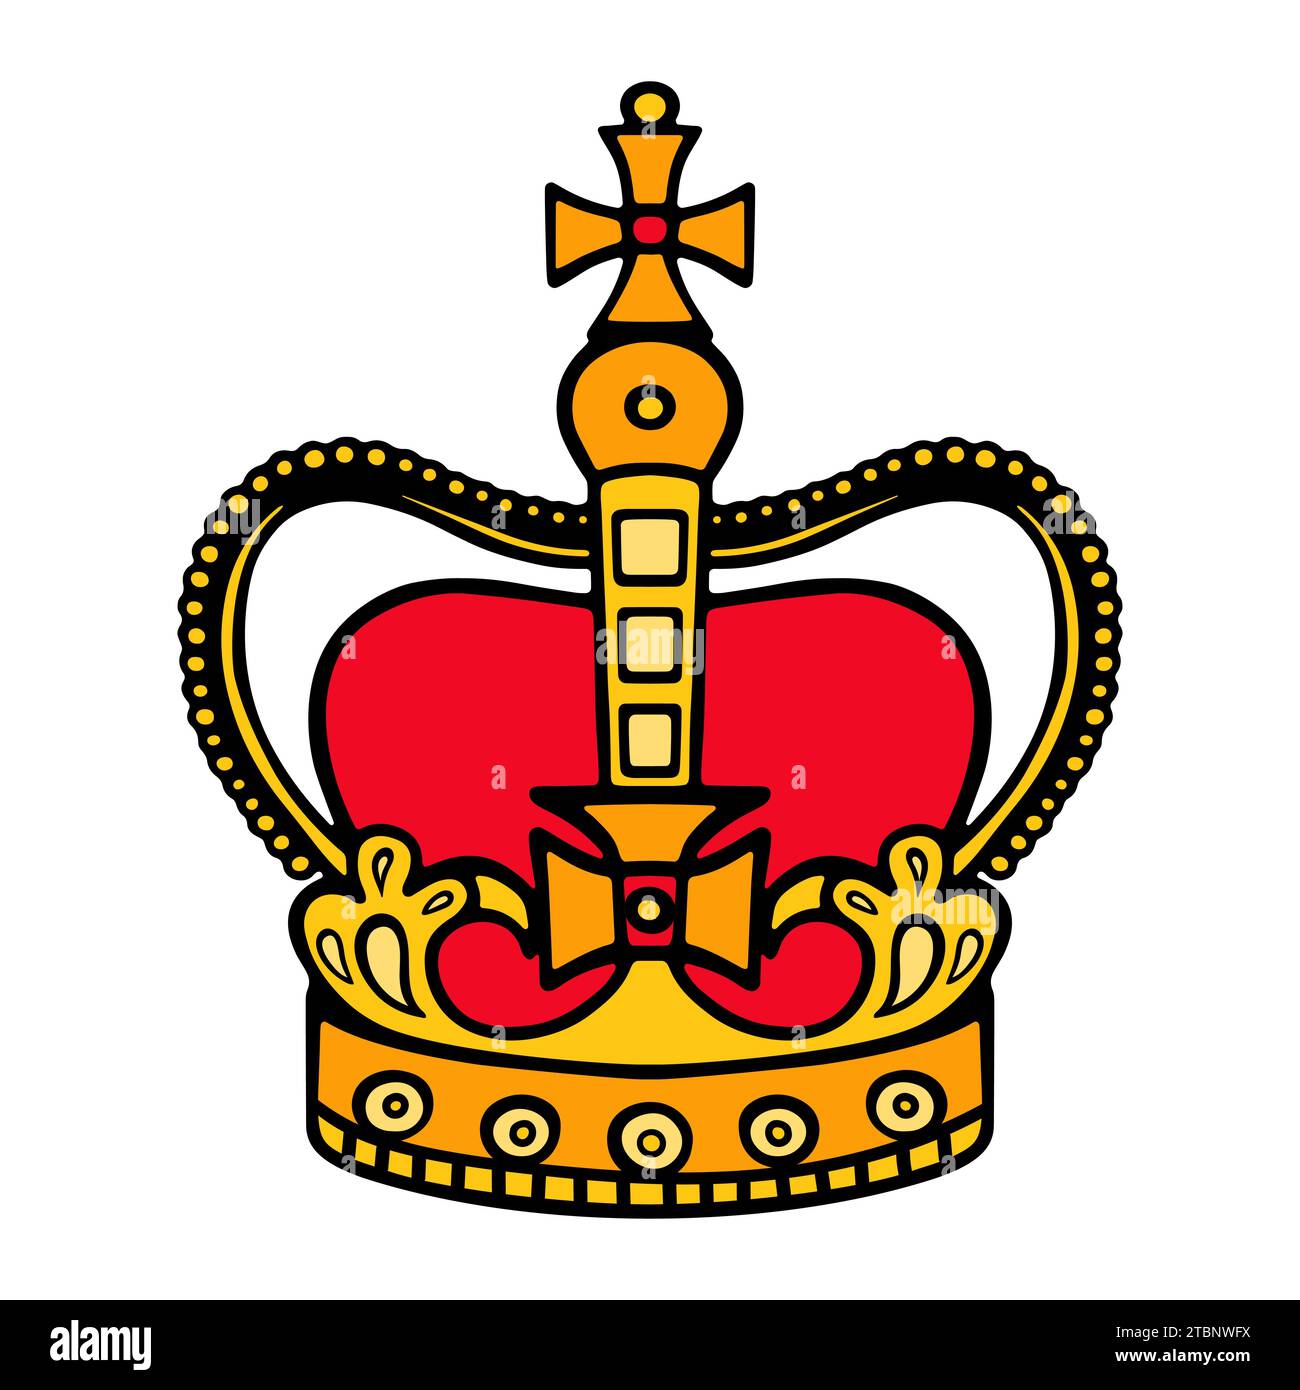 Farbvektor-Ikone der Krone der Königin von England isoliert auf weißem Hintergrund Stock Vektor